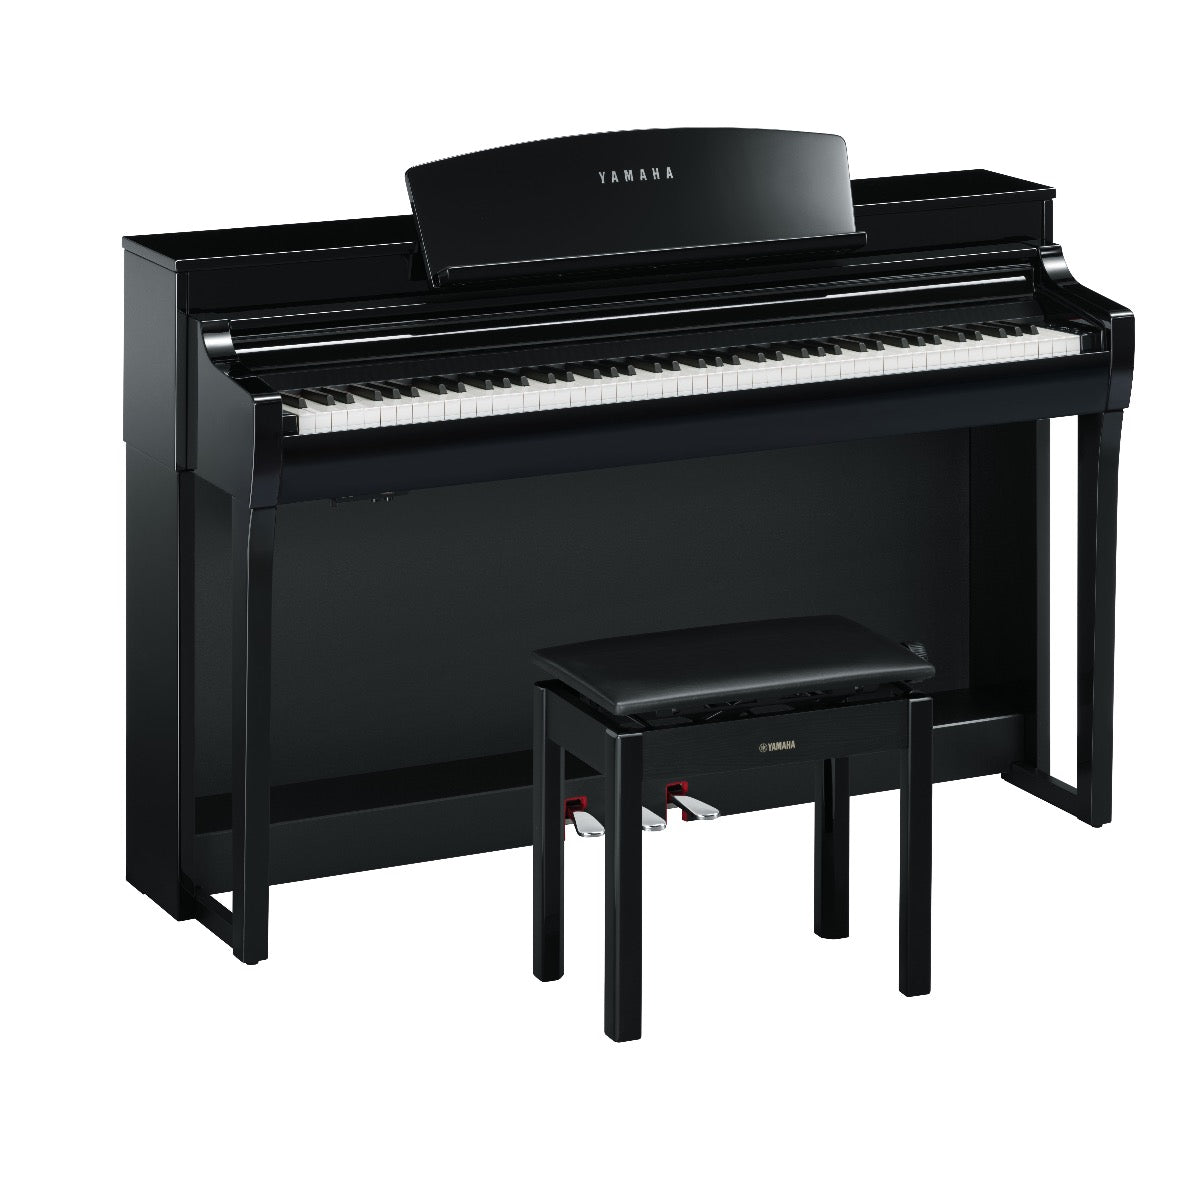 Yamaha Clavinova CSP255PE Digital Piano with Bench - Polished Ebony, View 2